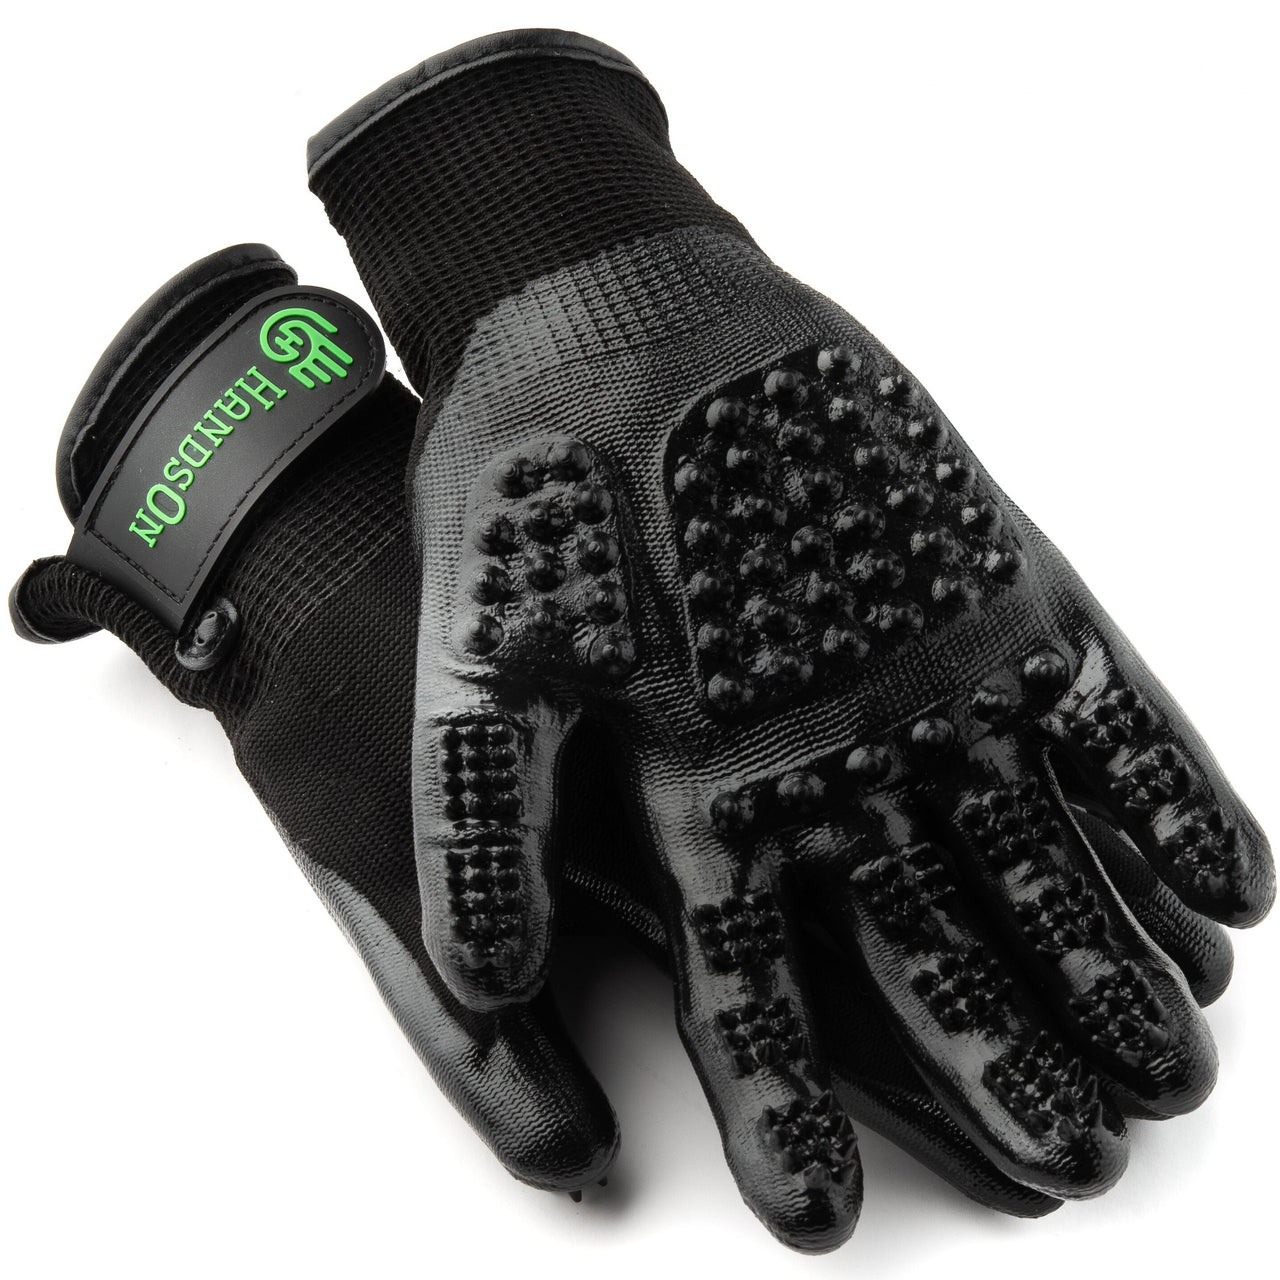 HandsOn Animal Bathing/Grooming Glove Black